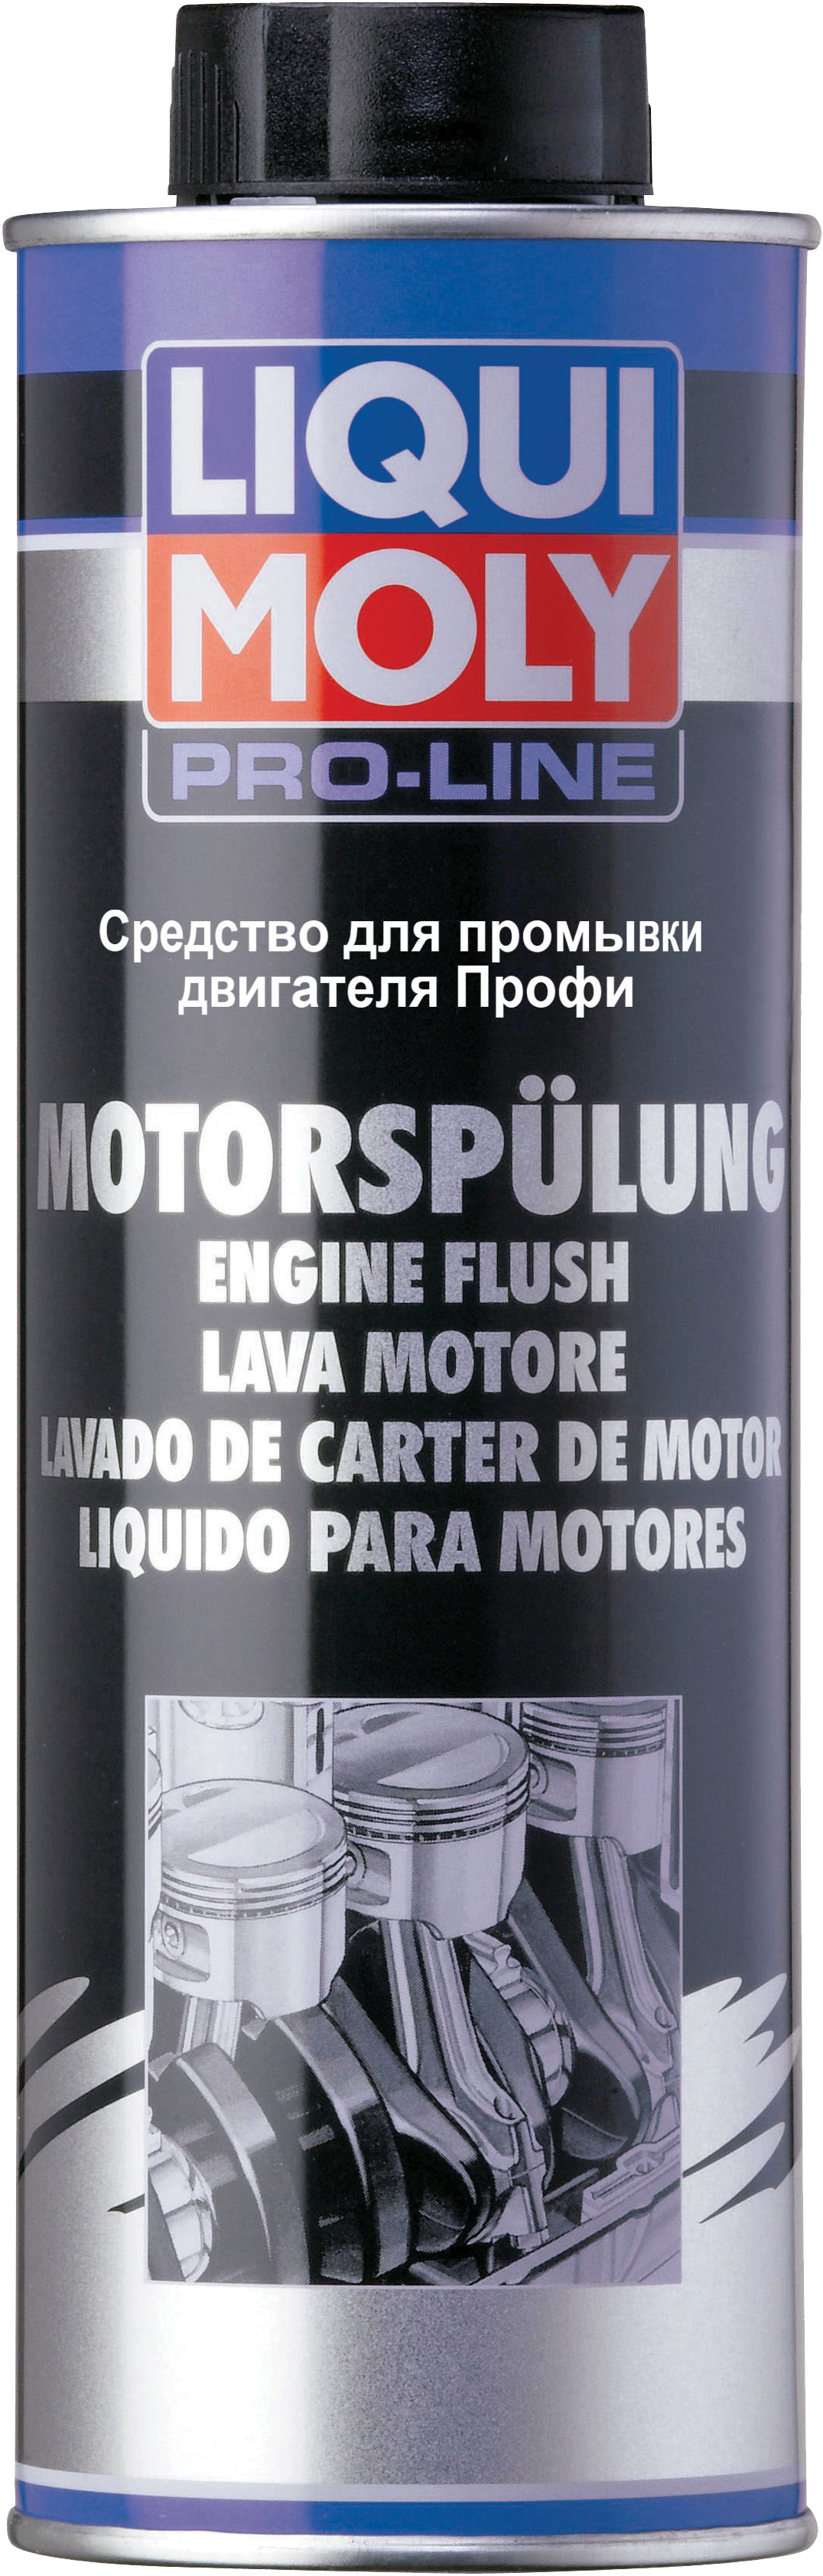 Средство для промывки двигателя Профи LIQUI MOLY Pro-Line Motorspulung (0,5 кг)